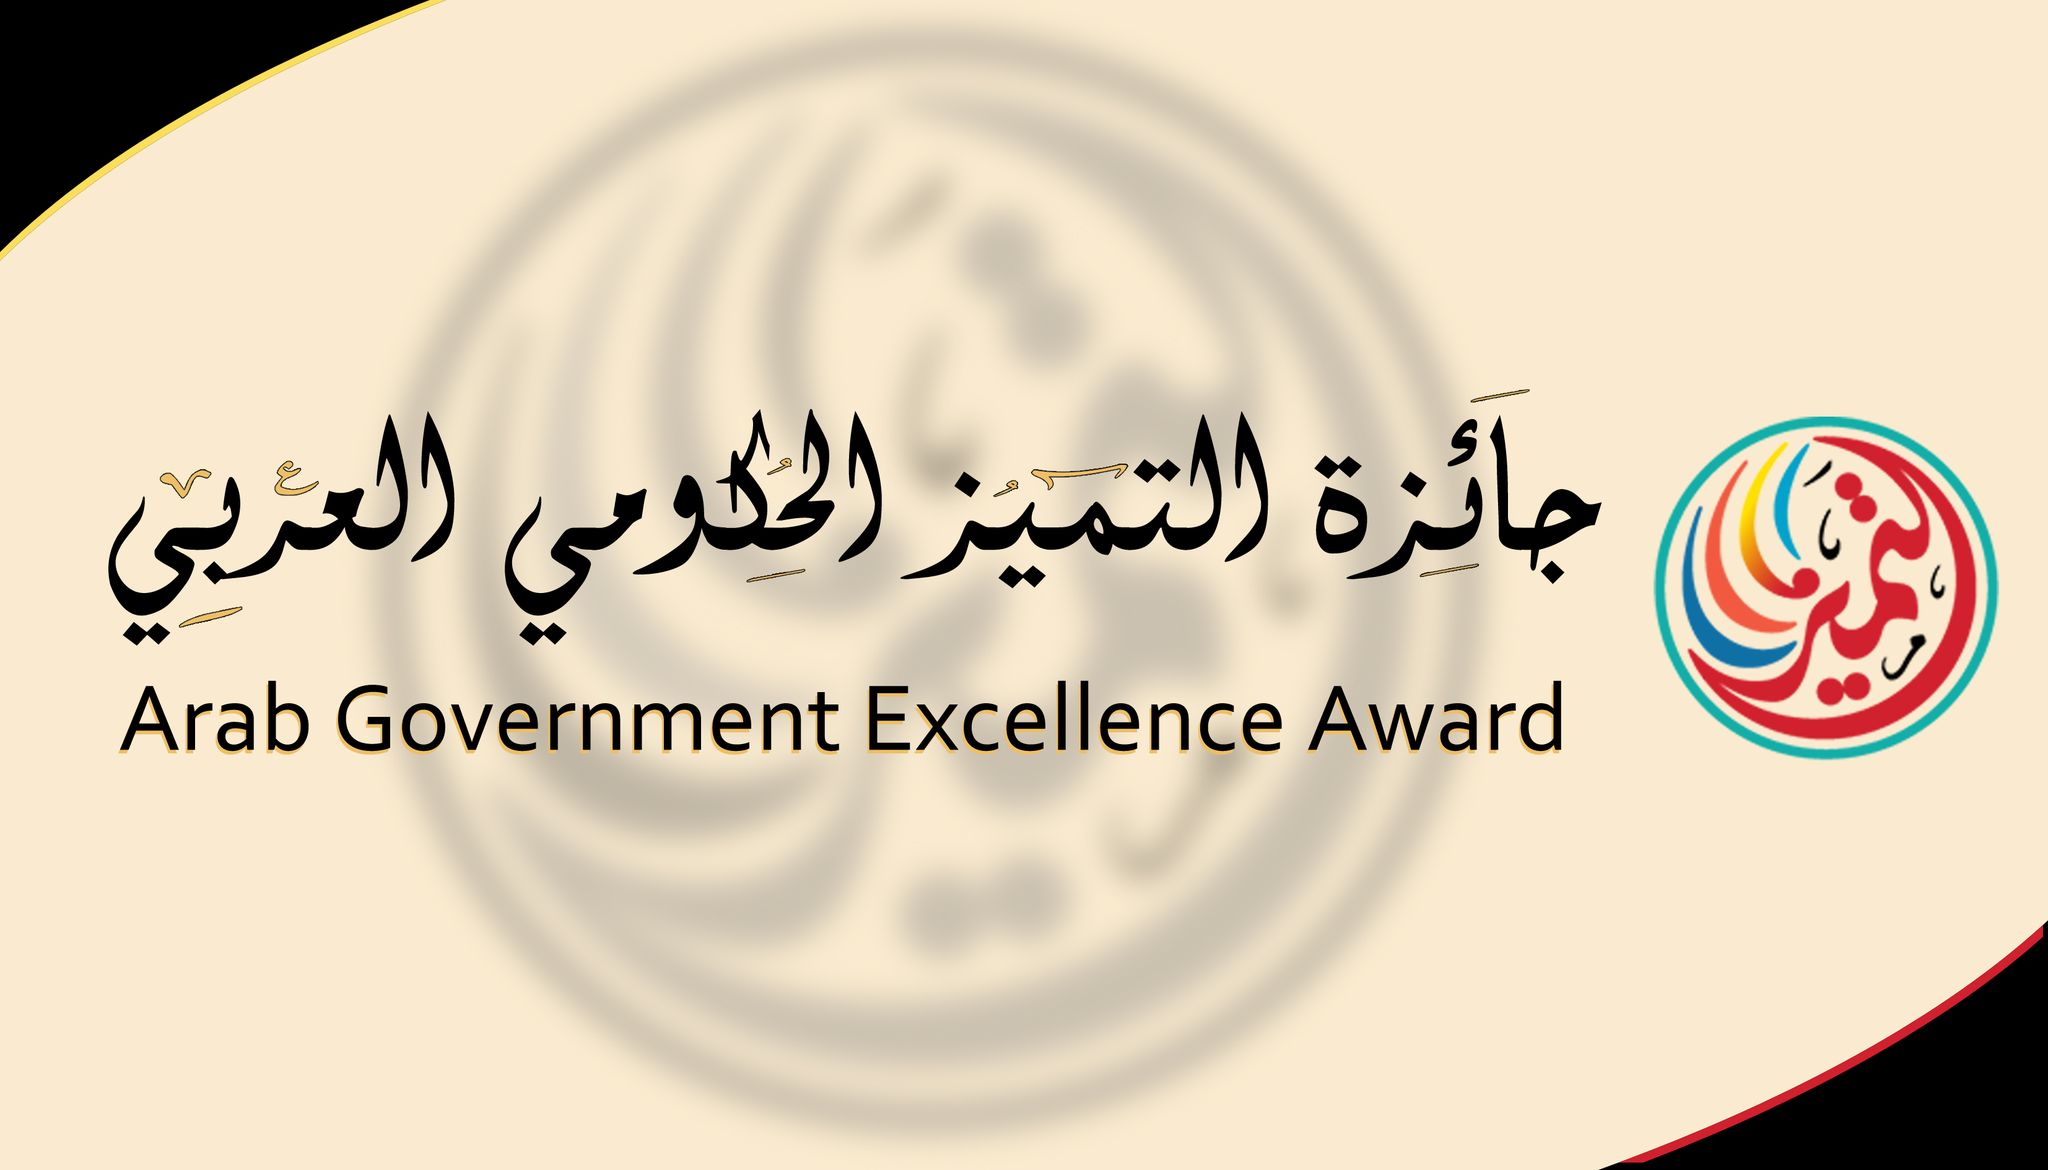  جائزة التميز العربي الحكومي